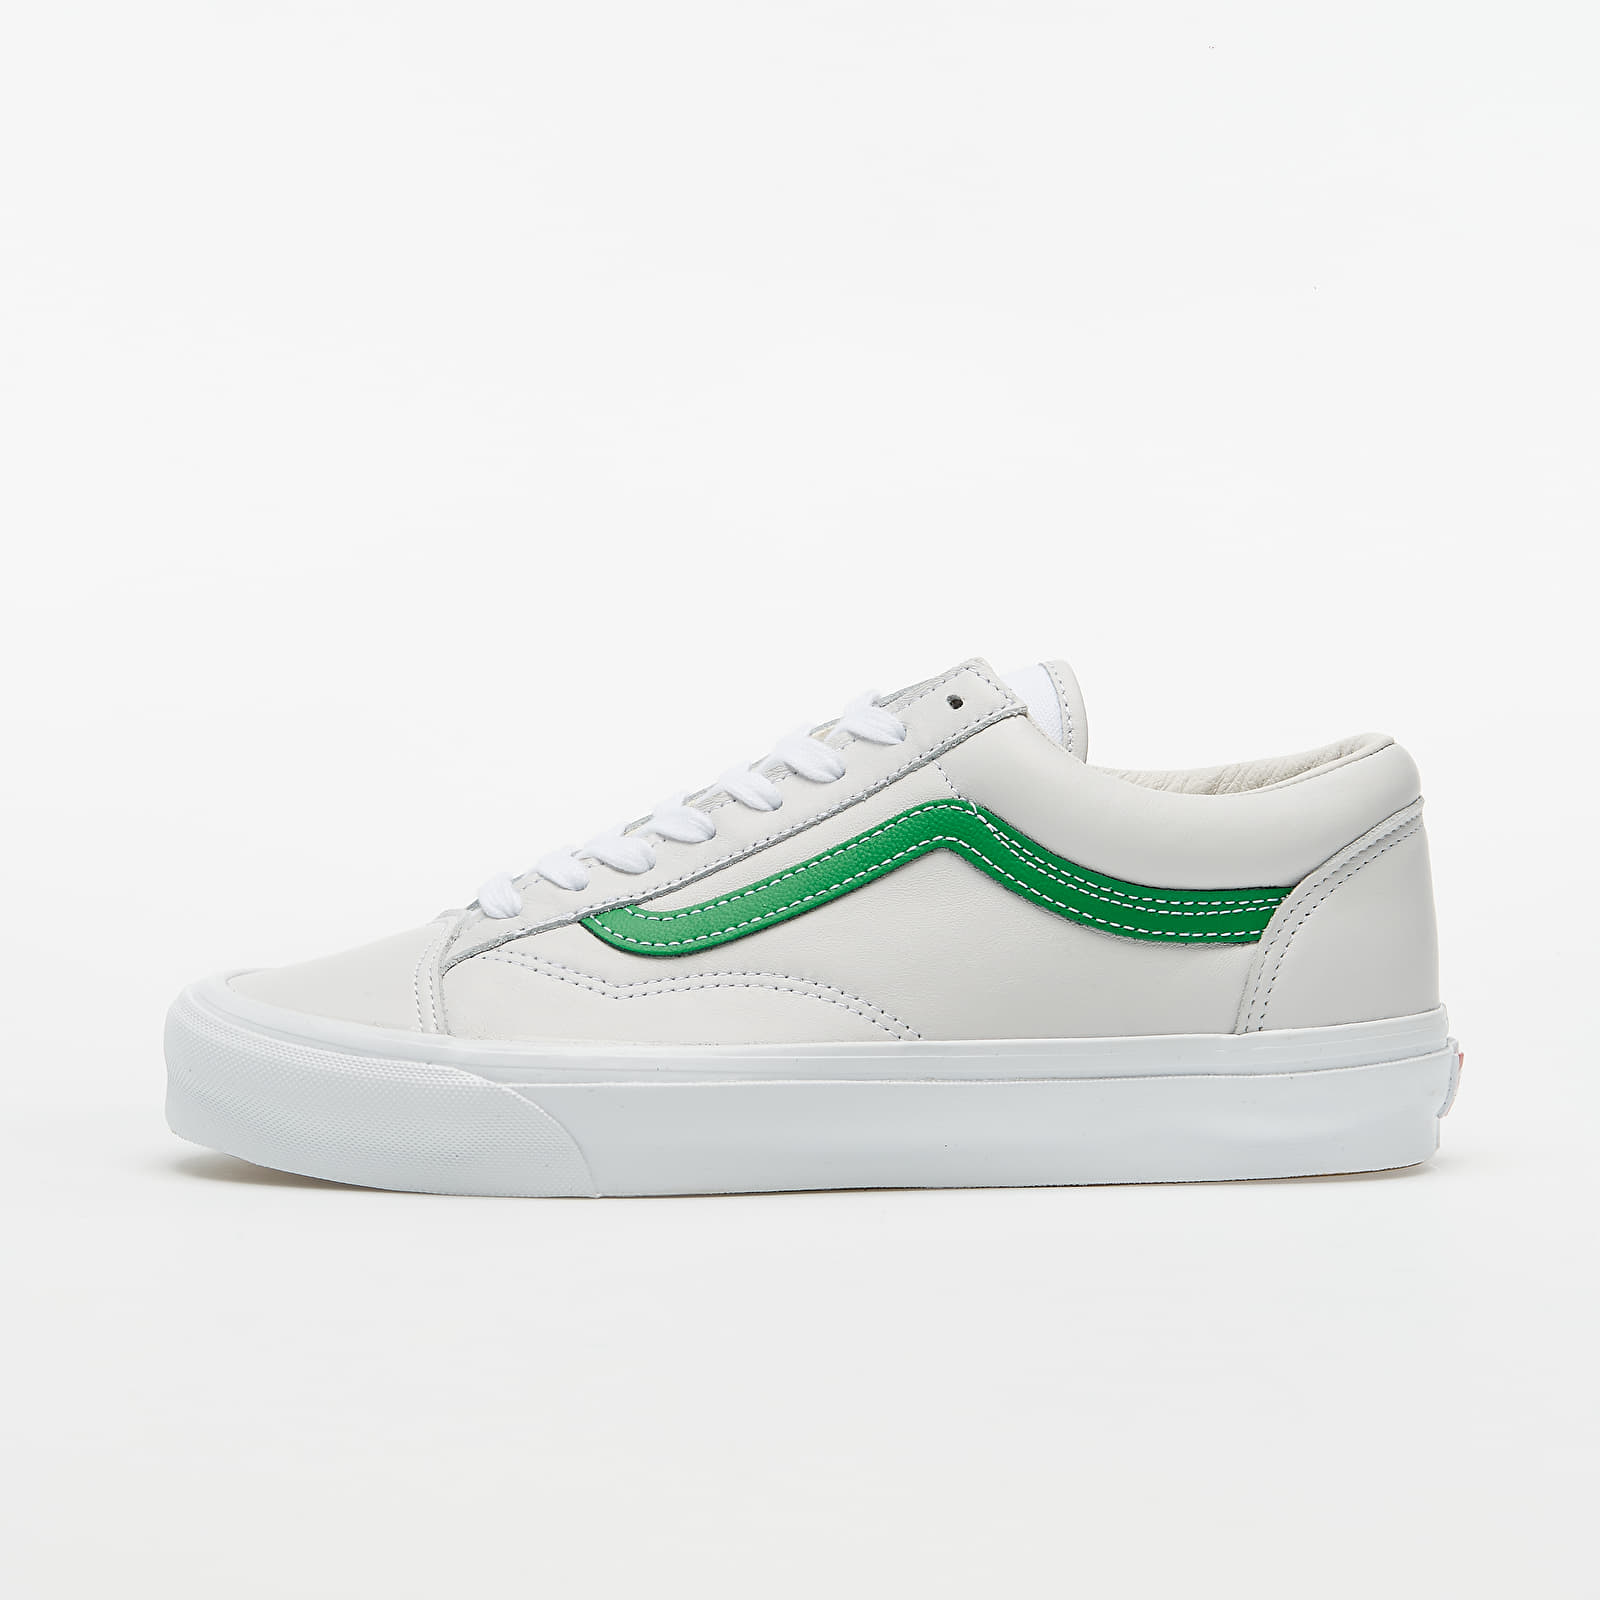 Vans Vault OG Style 36 LX (Leather) Green/ White